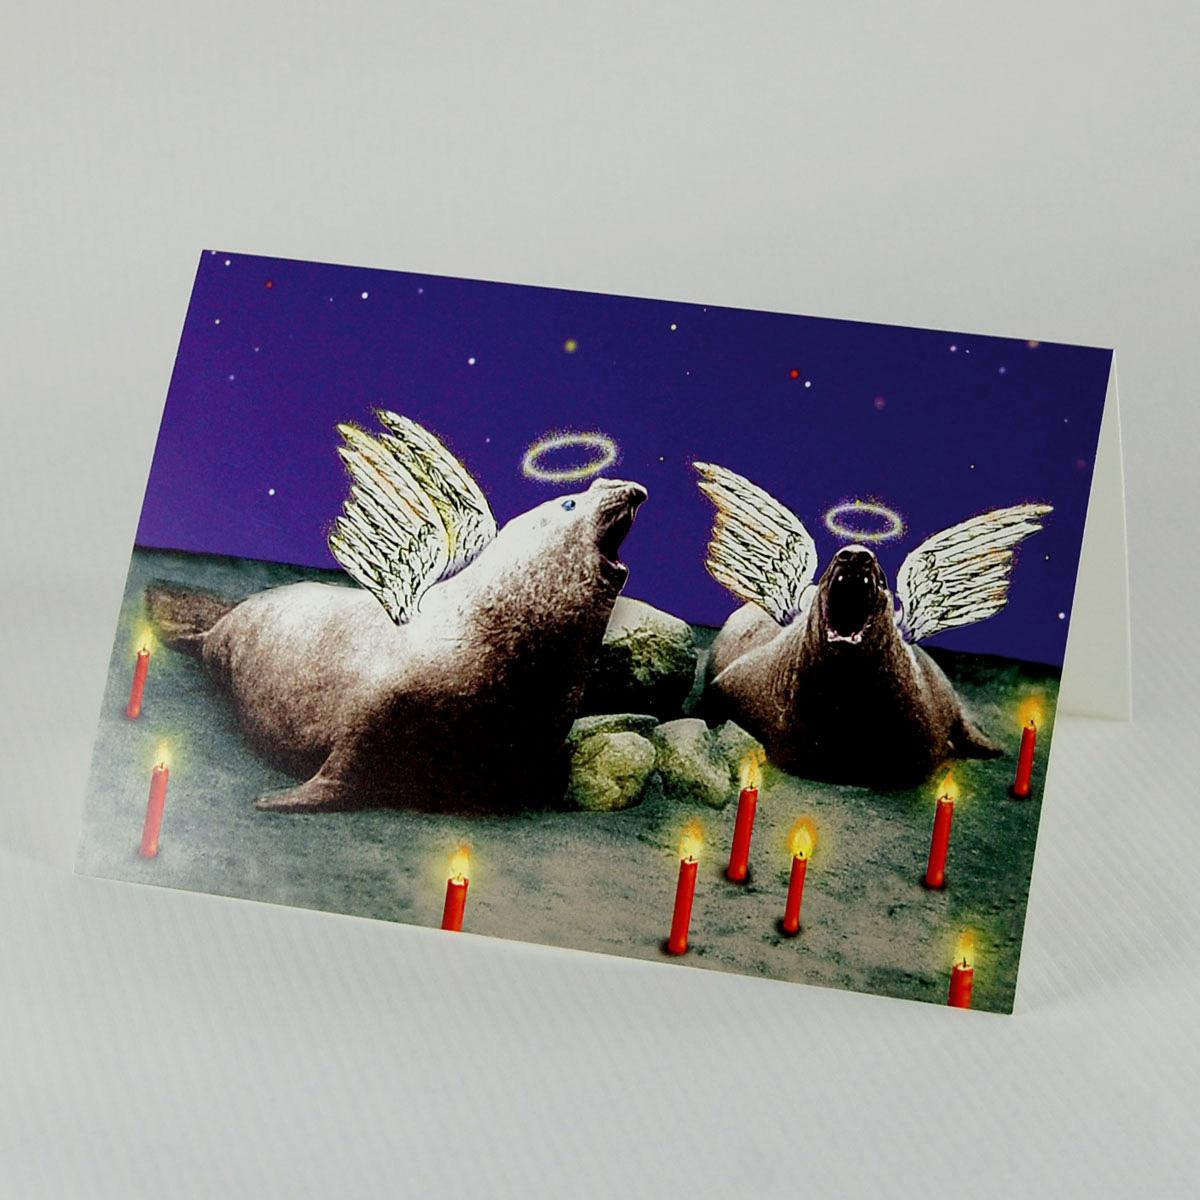 skurille Weihnachtskarte: Stille Nacht (See-Elefanten)